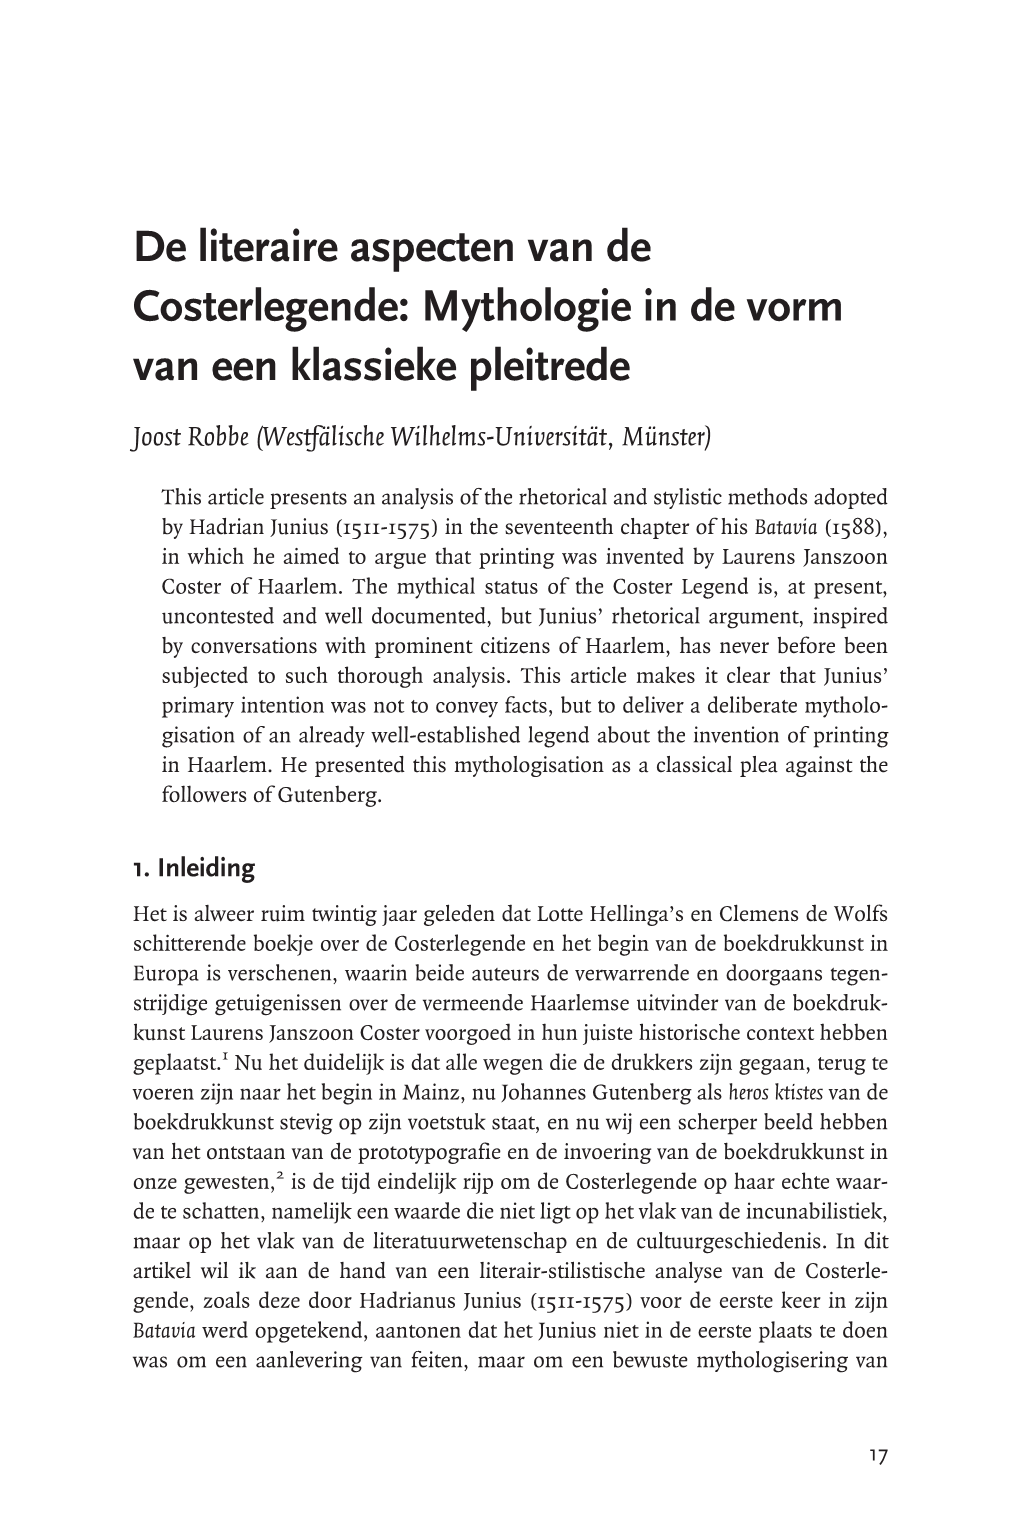 De Literaire Aspecten Van De Costerlegende: Mythologie in De Vorm Van Een Klassieke Pleitrede